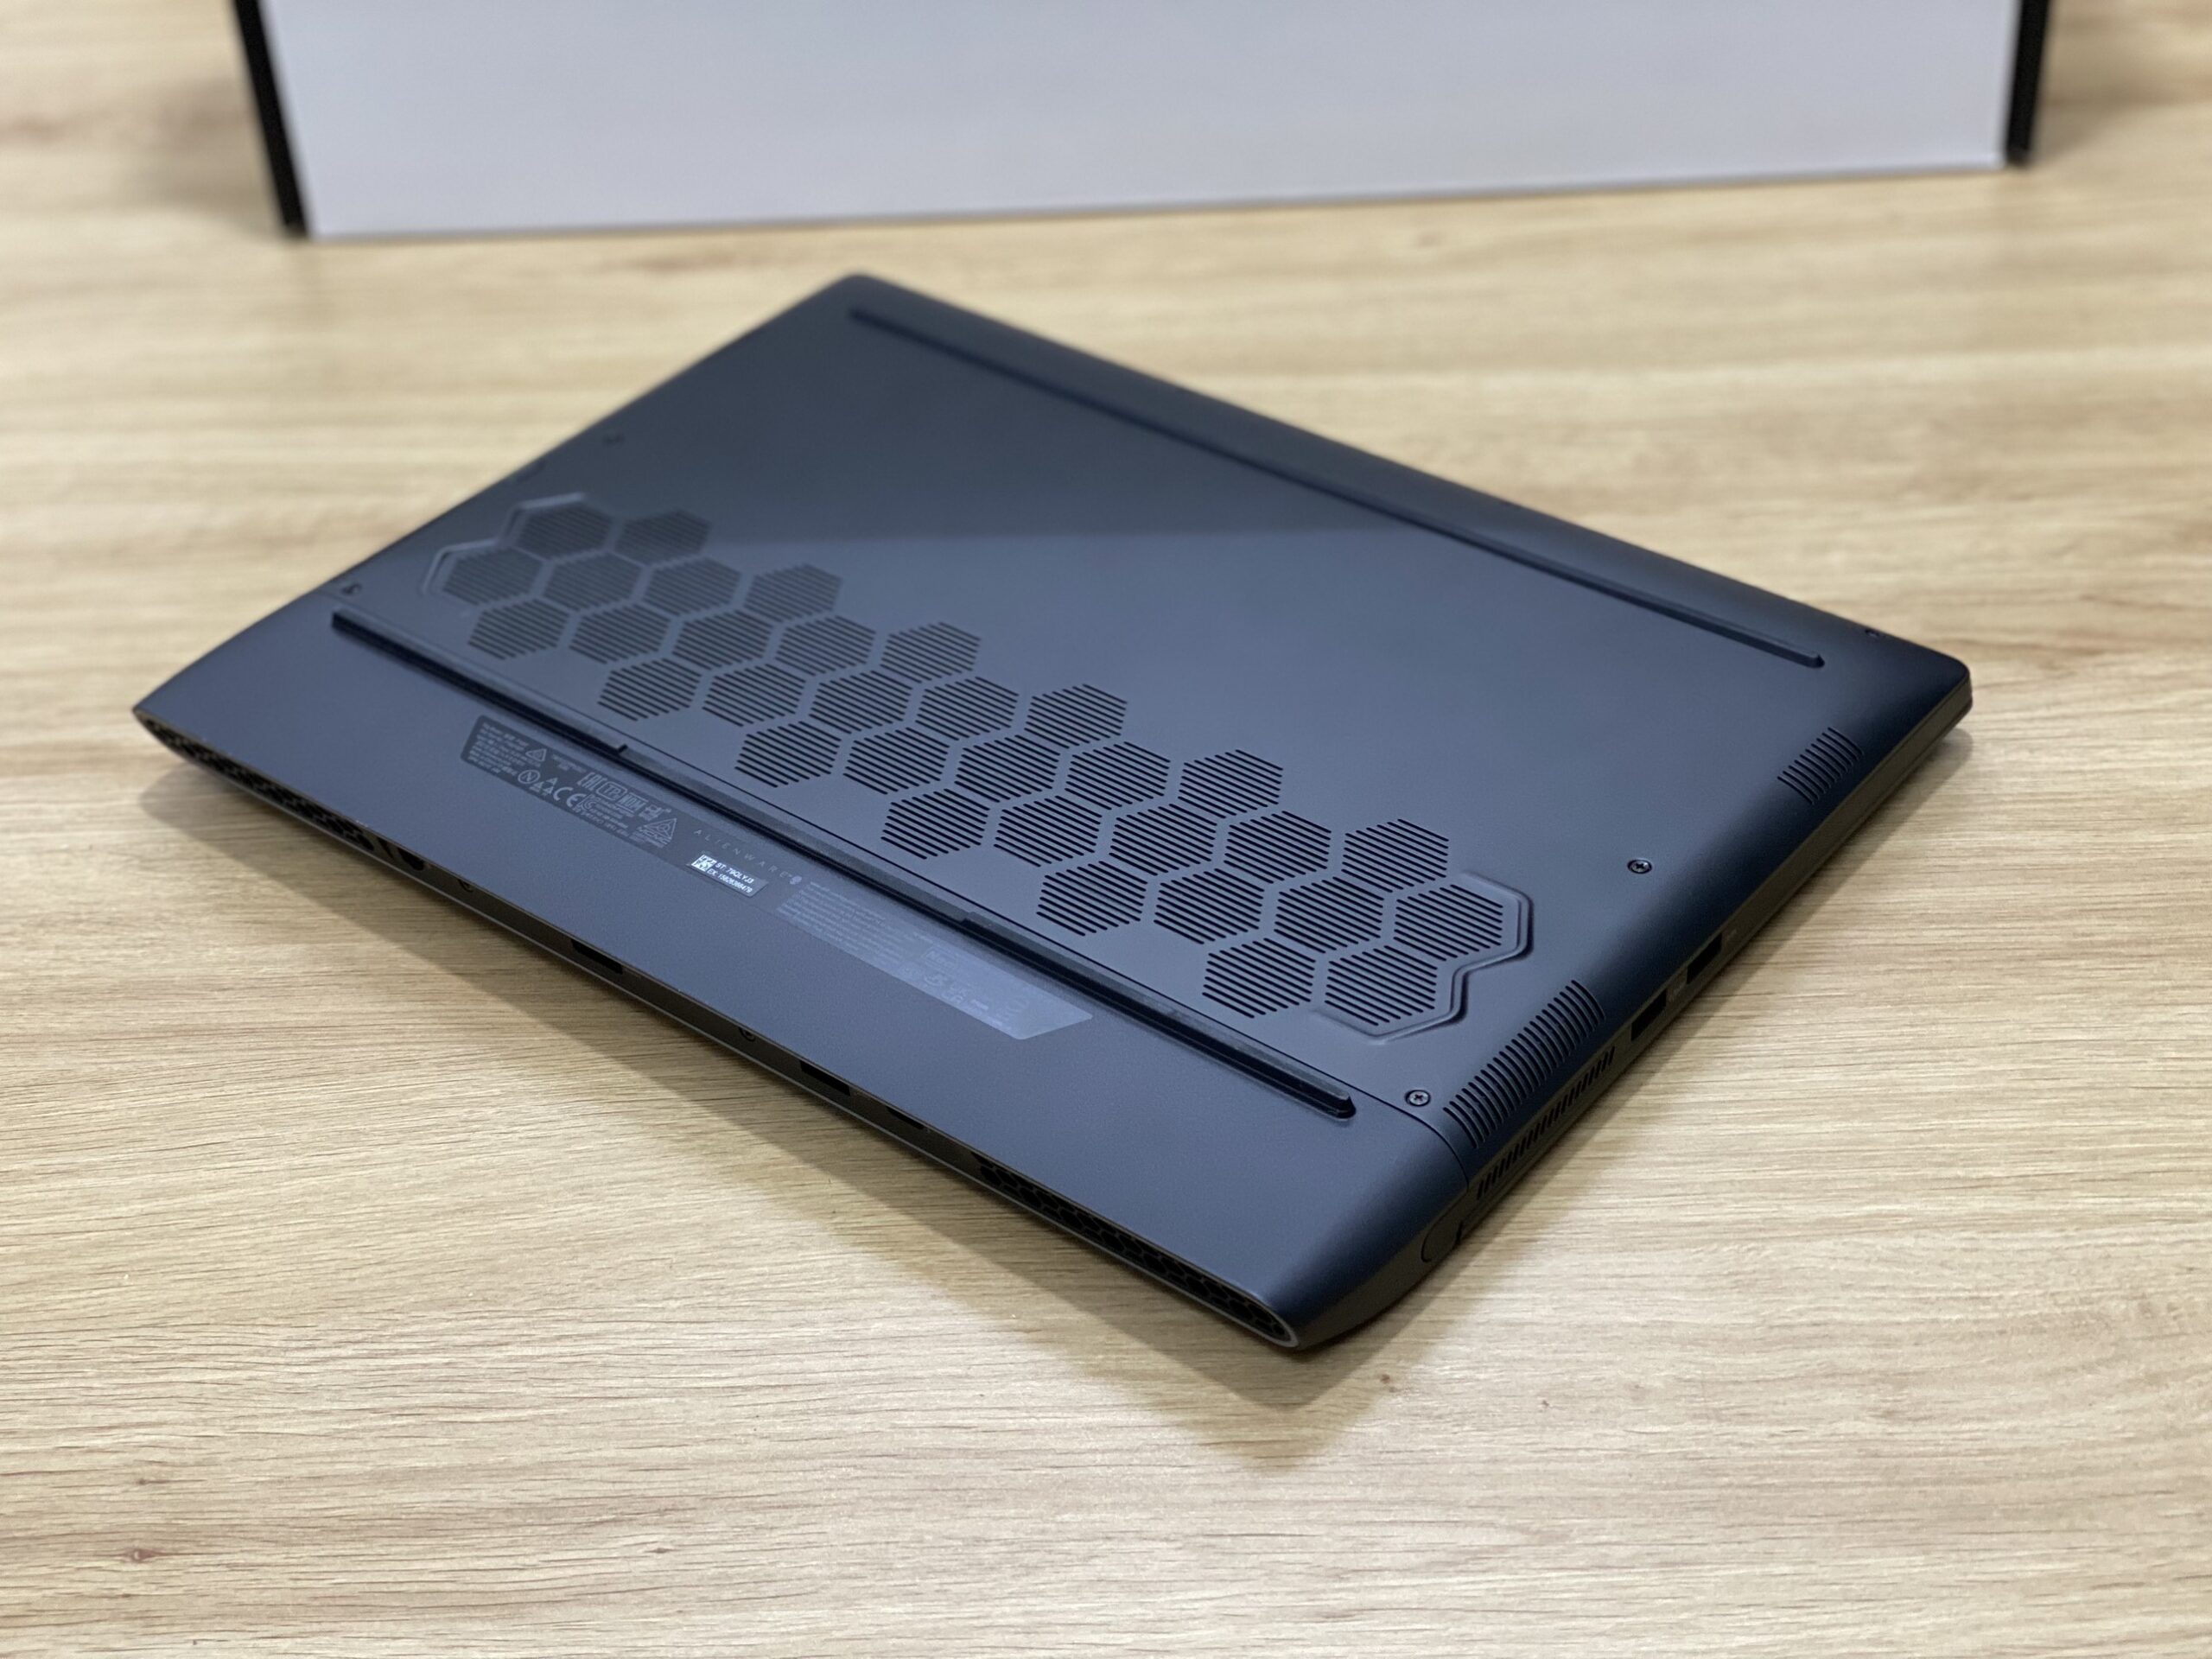 Laptop Dell Alienware M15 R6 i7-11800H, VGa RTX 3070 8GB, 